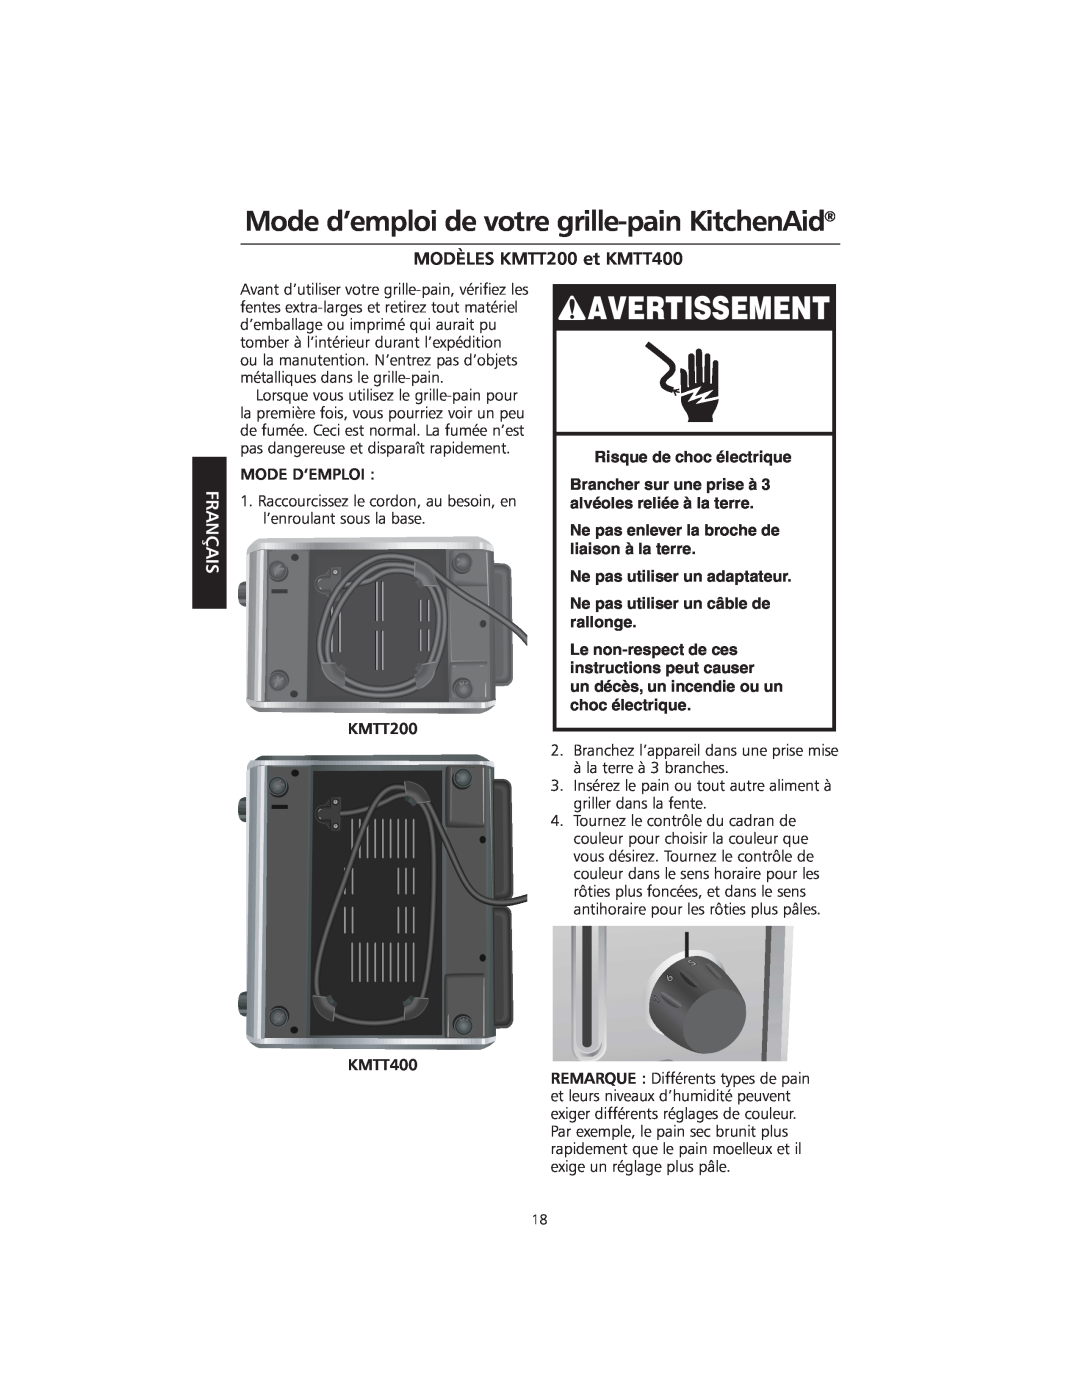 KitchenAid manual Mode d’emploi de votre grille-pain KitchenAid, MODÈLES KMTT200 et KMTT400, Avertissement, Français 